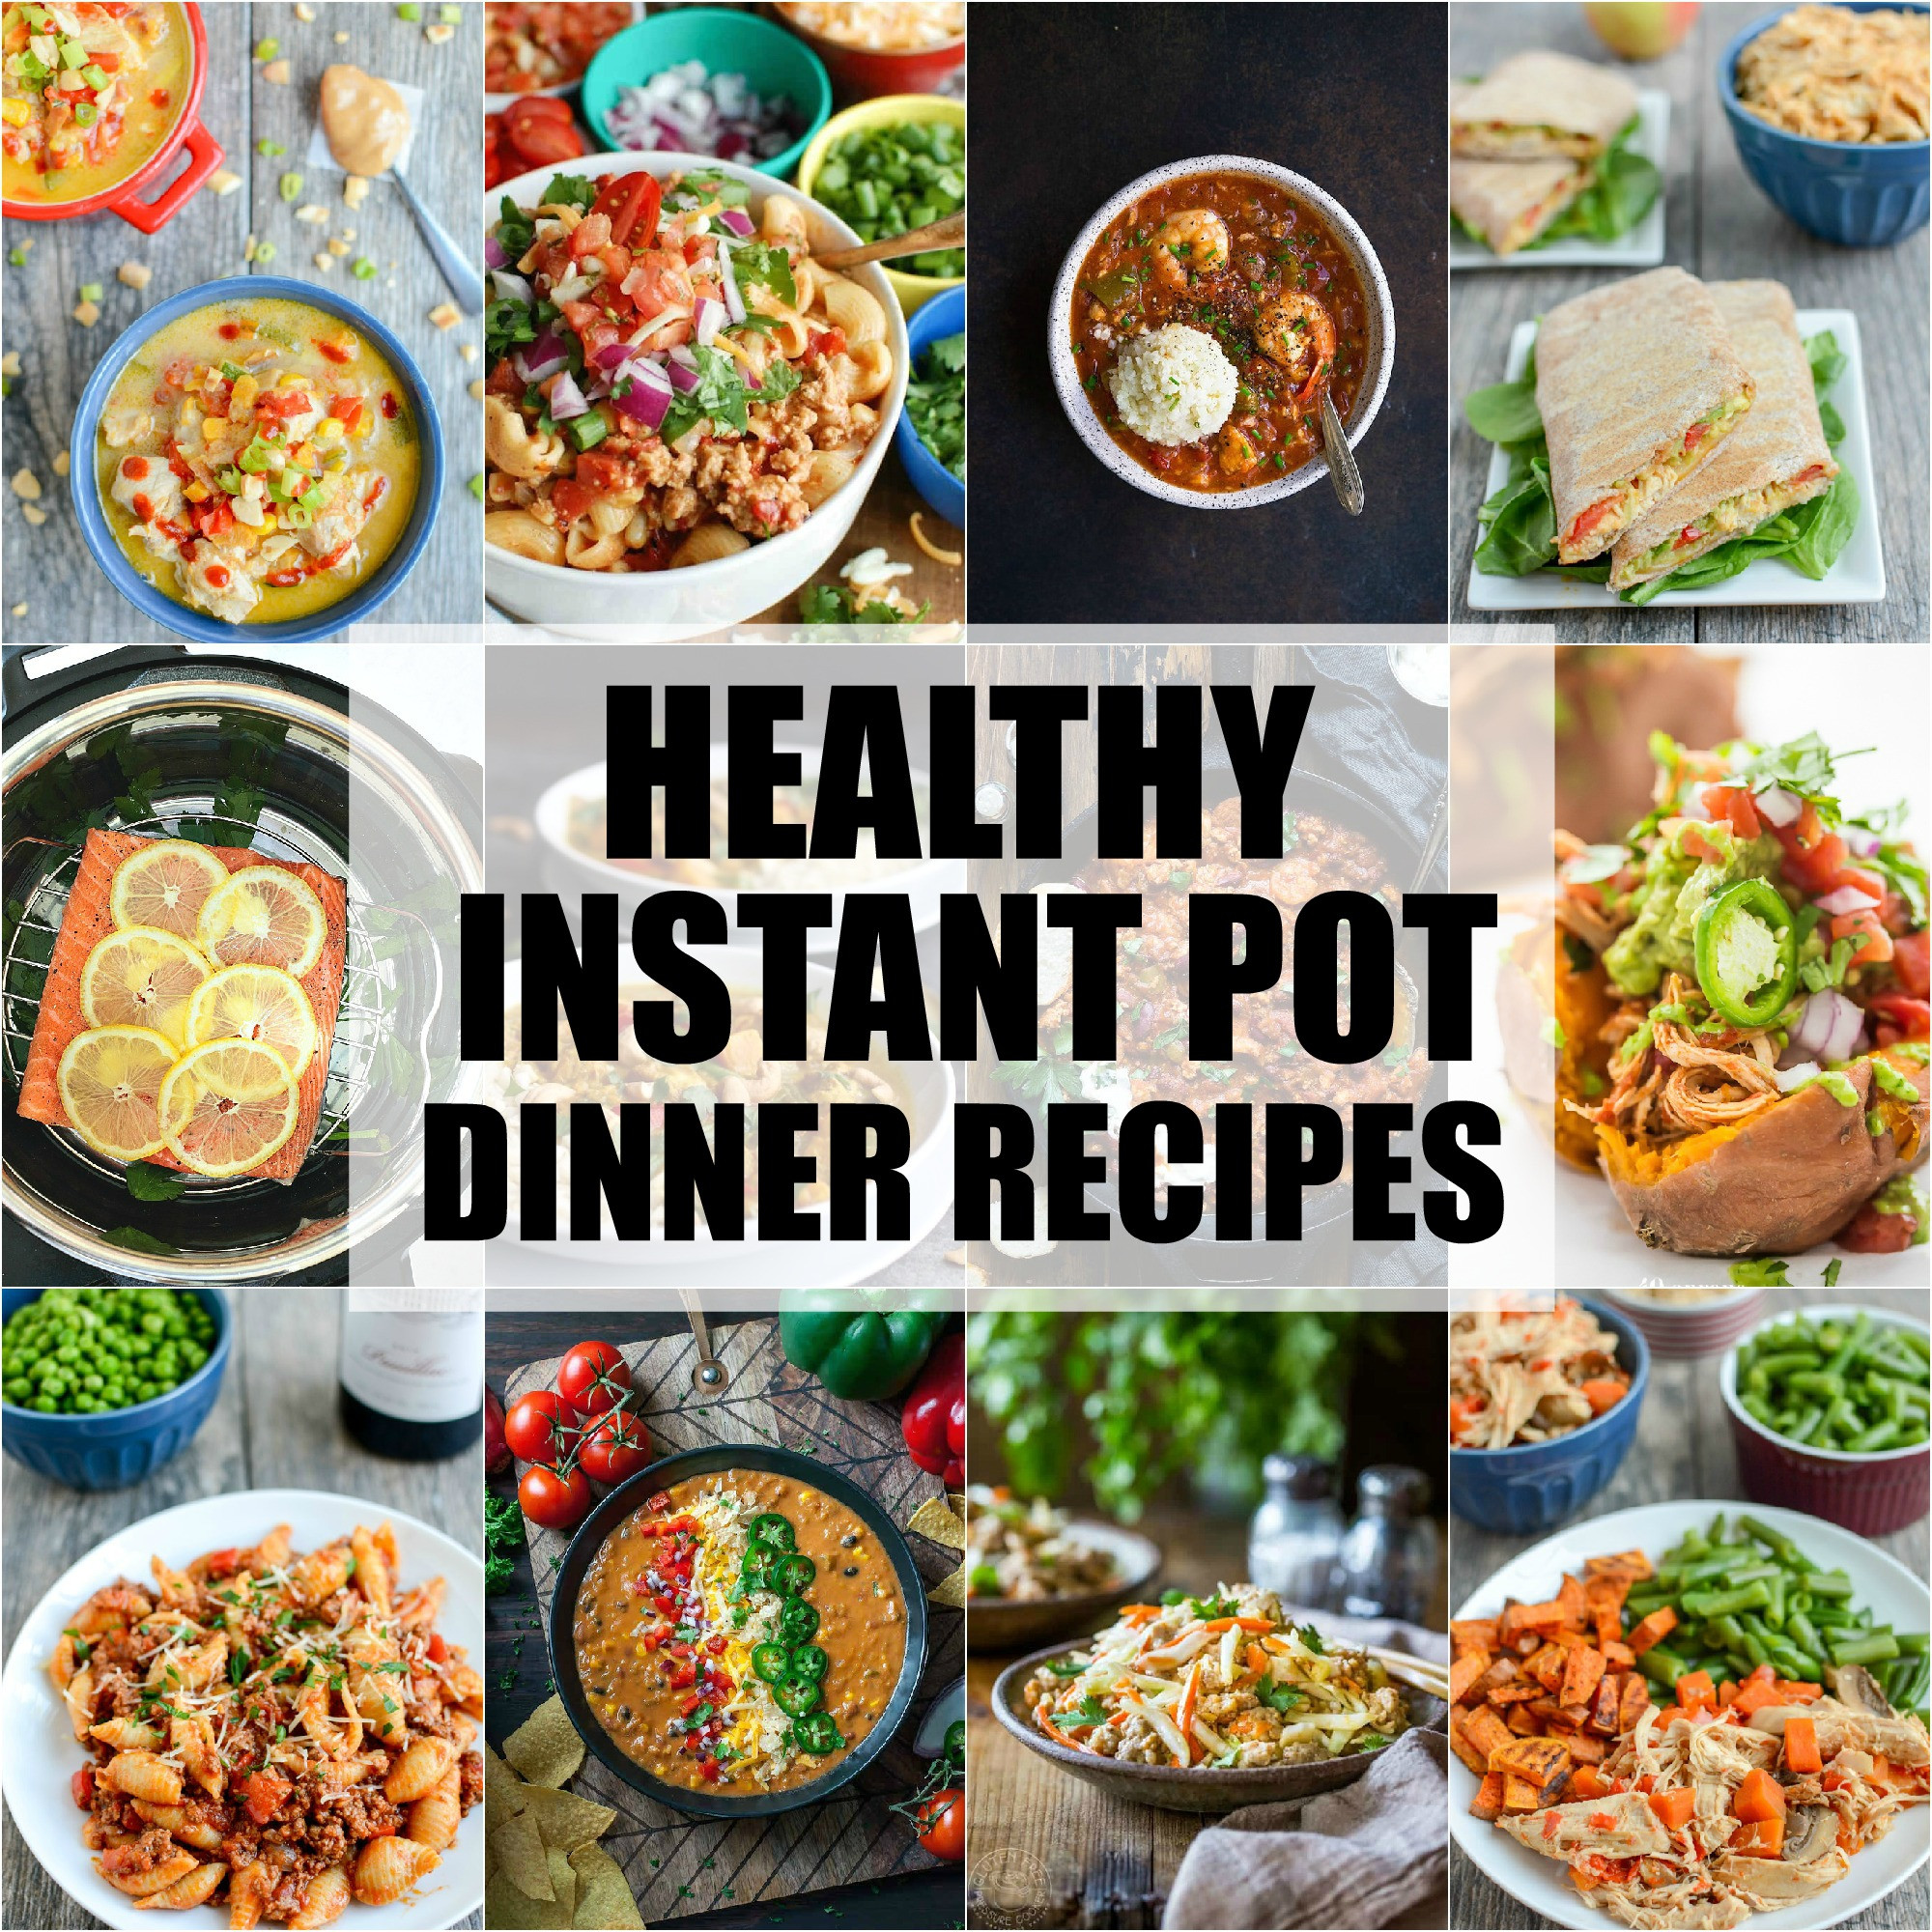 Healthy Fast Instant Pot Recipes
 Healthy Instant Pot Dinner Recipes